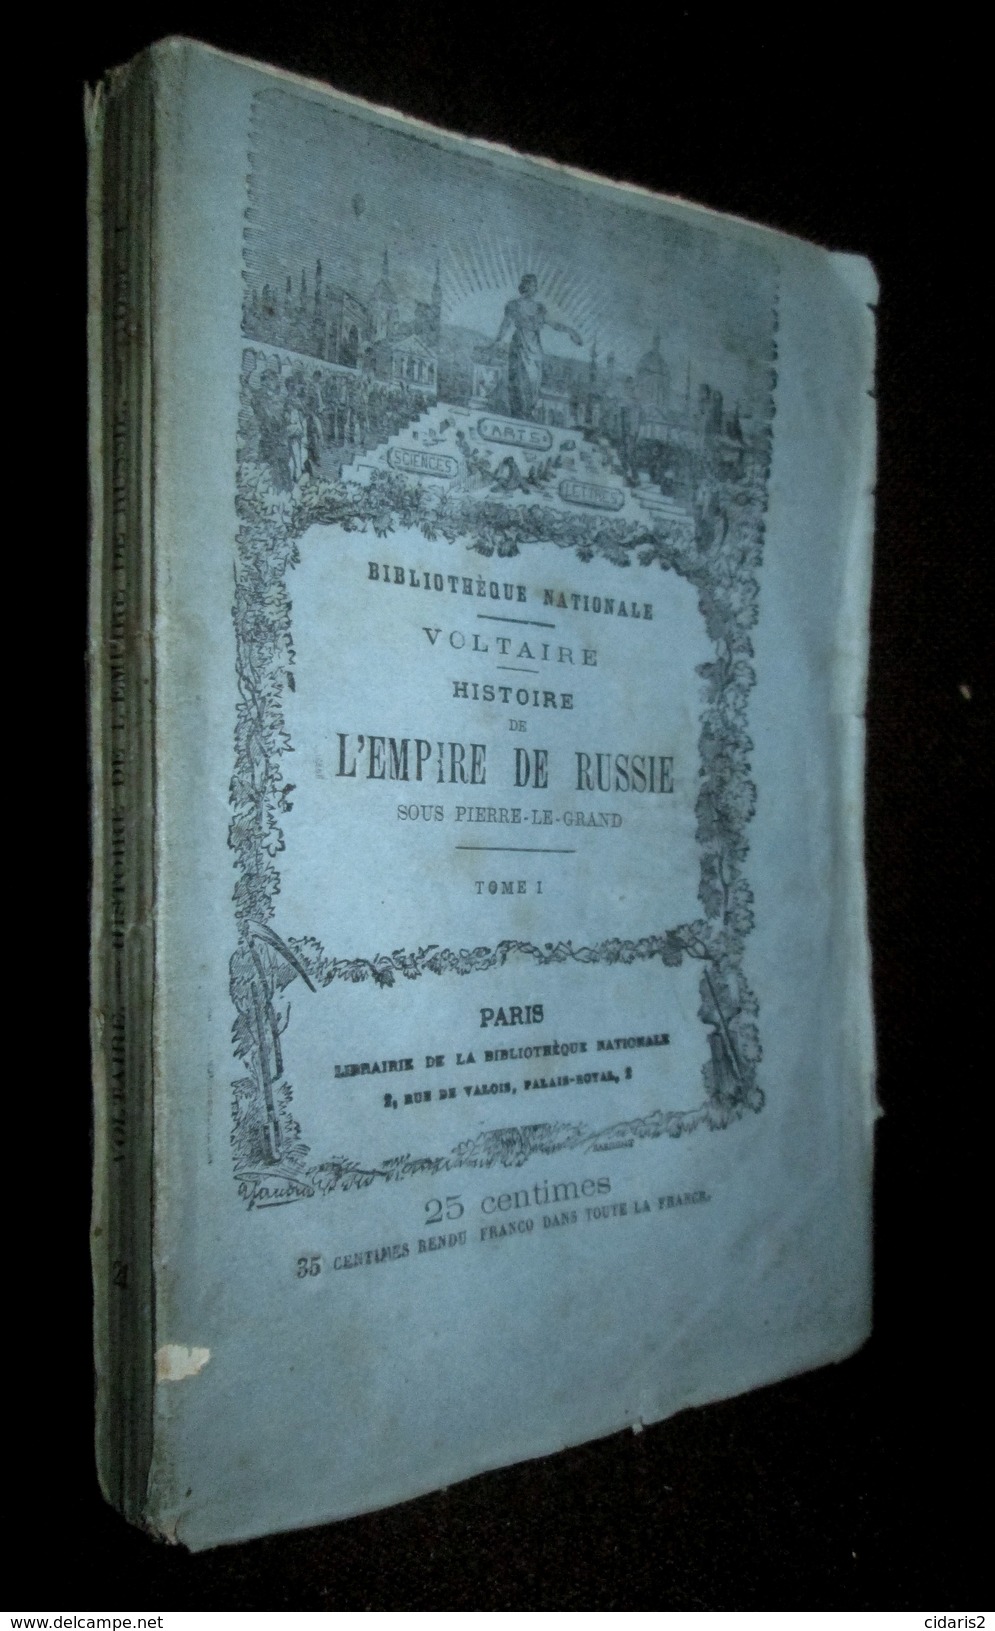 Lot 20 Titres Collection "Meilleurs Auteurs Anciens & Modernes" BIBLIOTHEQUE NATIONALE Voltaire... Litterature C1875 ! - Wholesale, Bulk Lots